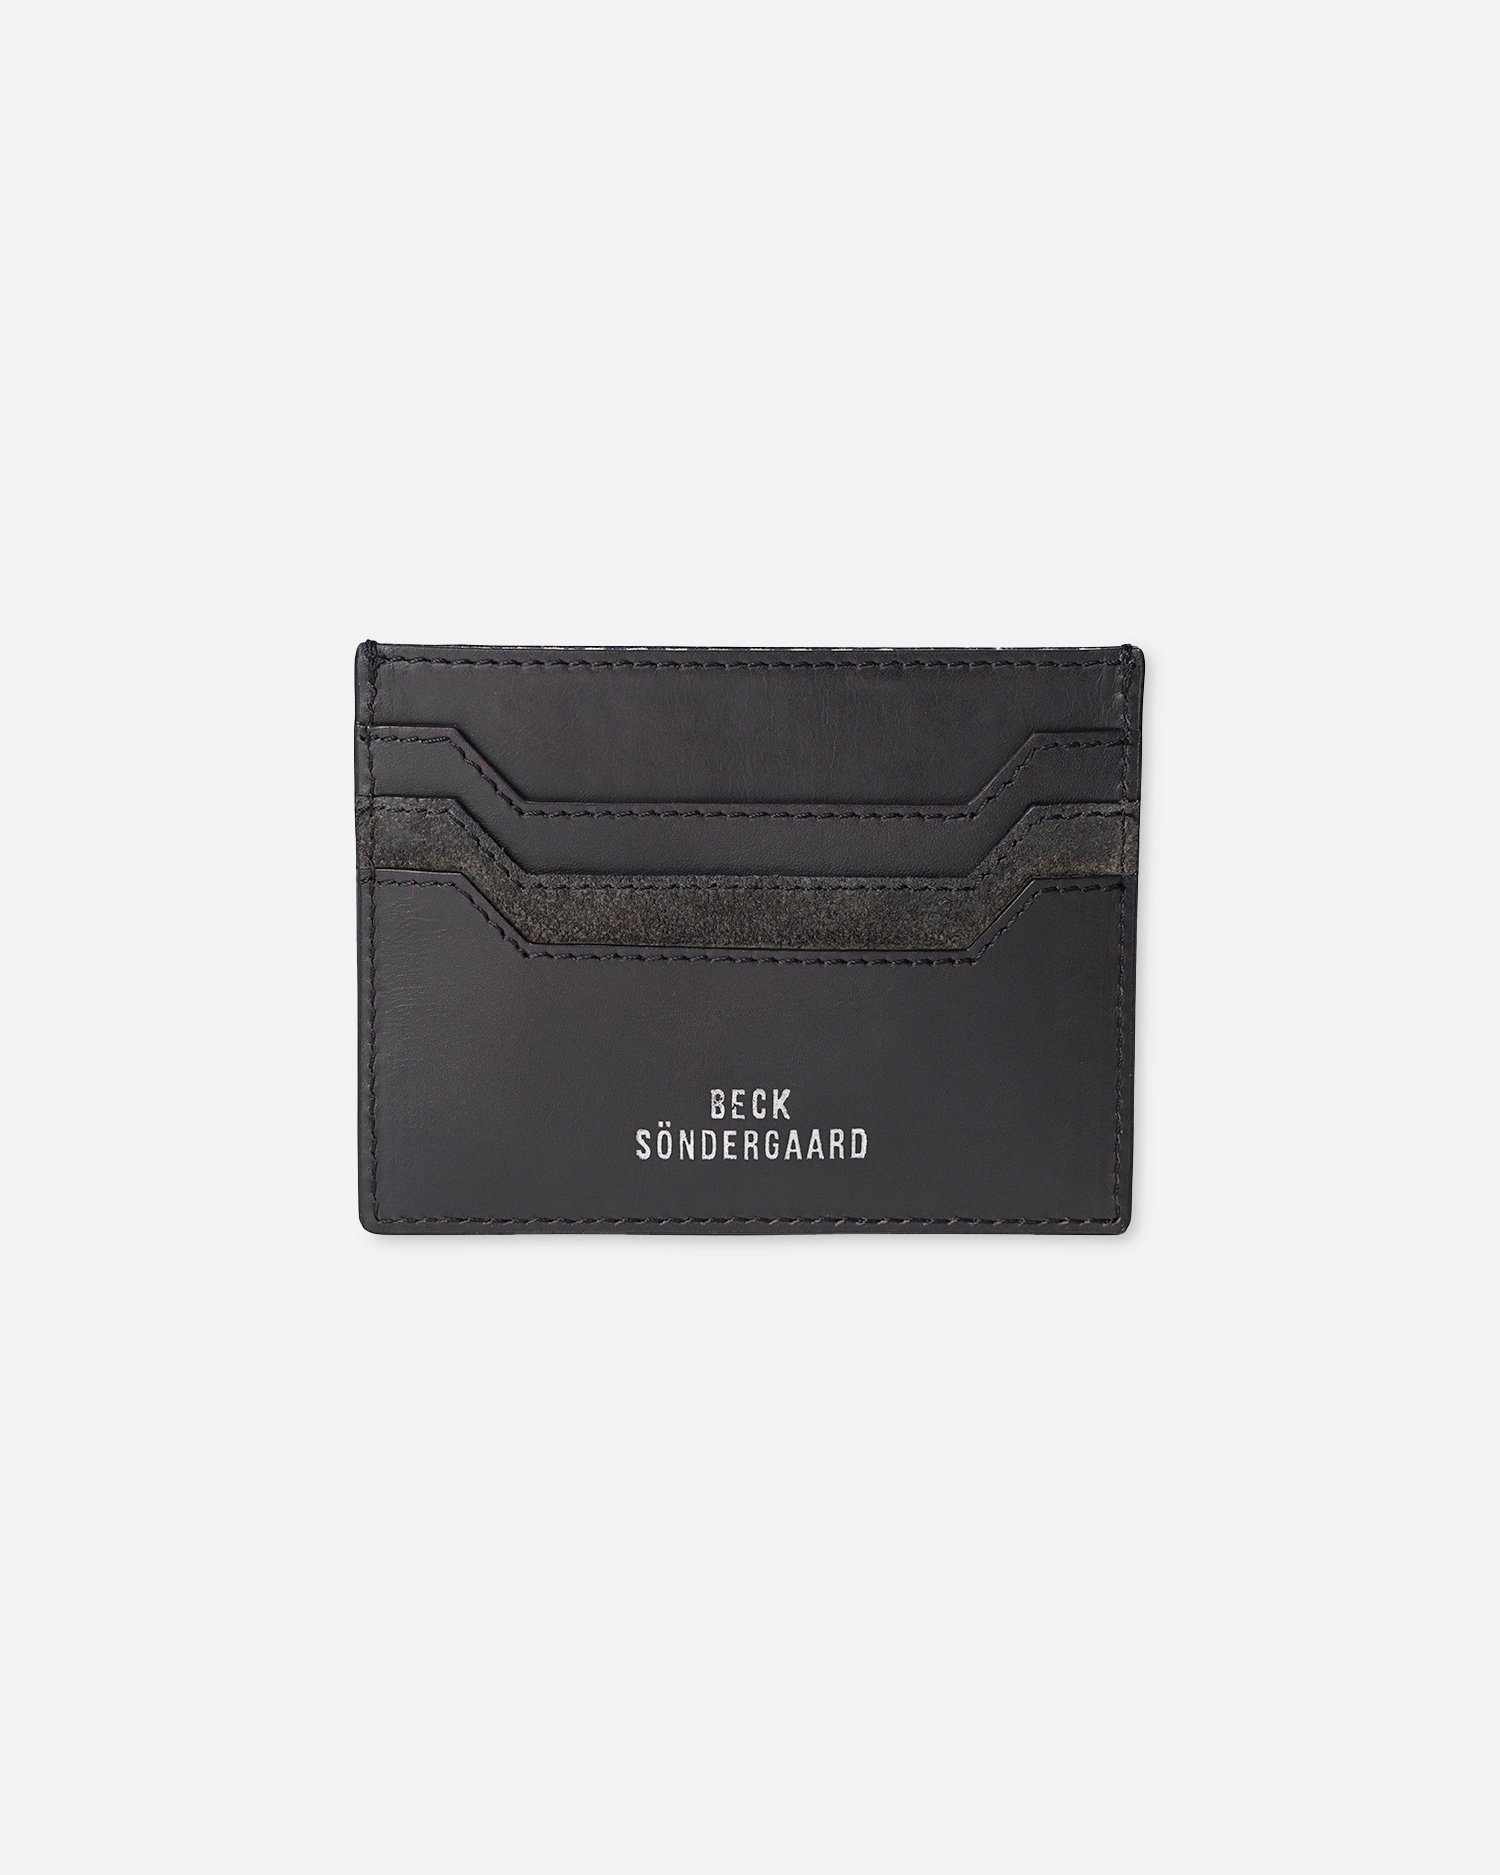 Becksöndergaard Geldbörse Mix Card Holder in Schwarz - Kreditkartenhalter aus Leder 11x8,5 cm, mit Sieben Fächern